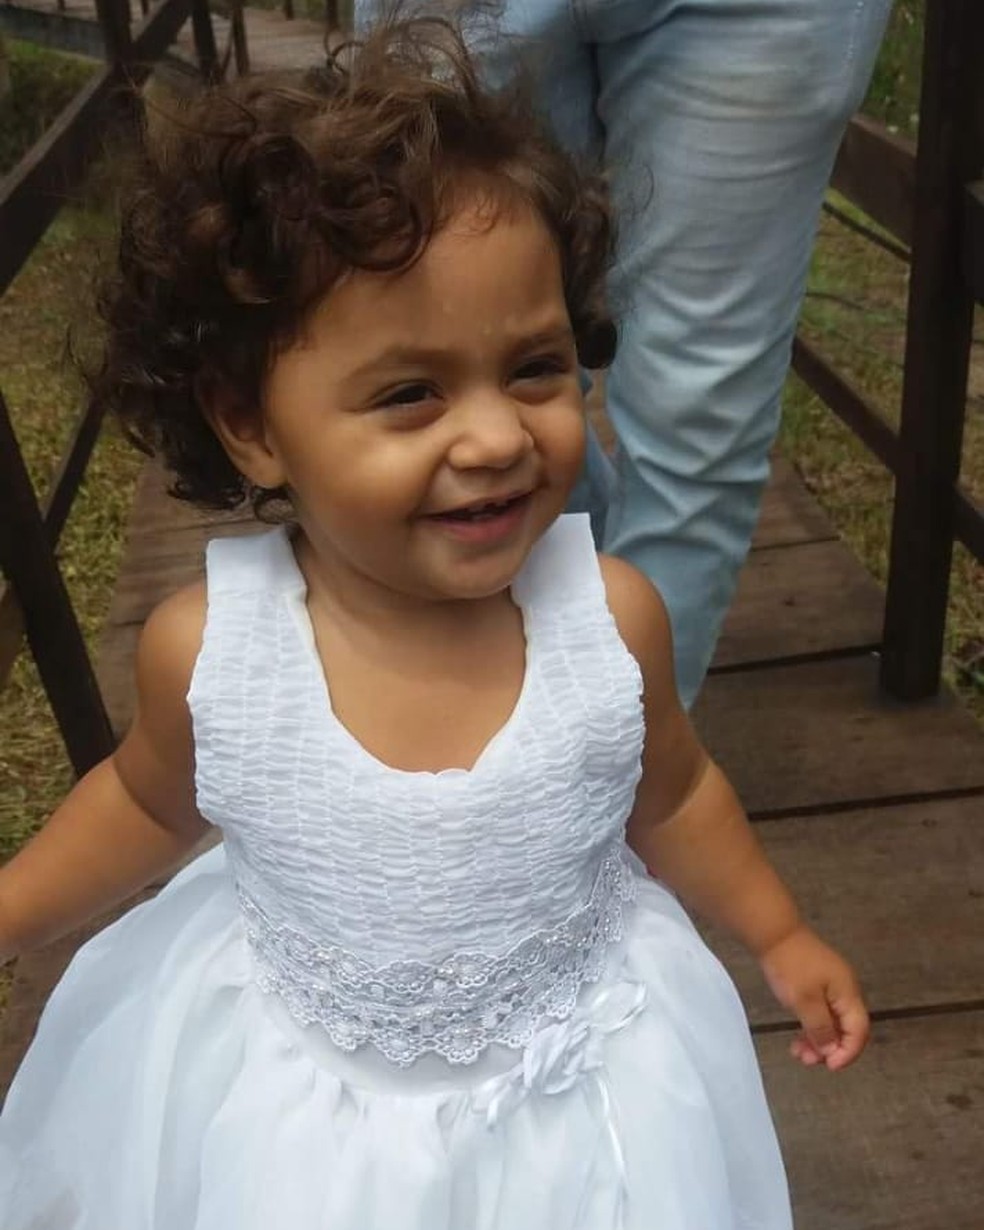 Morre menina de 2 anos atingida com tiro no aniversário